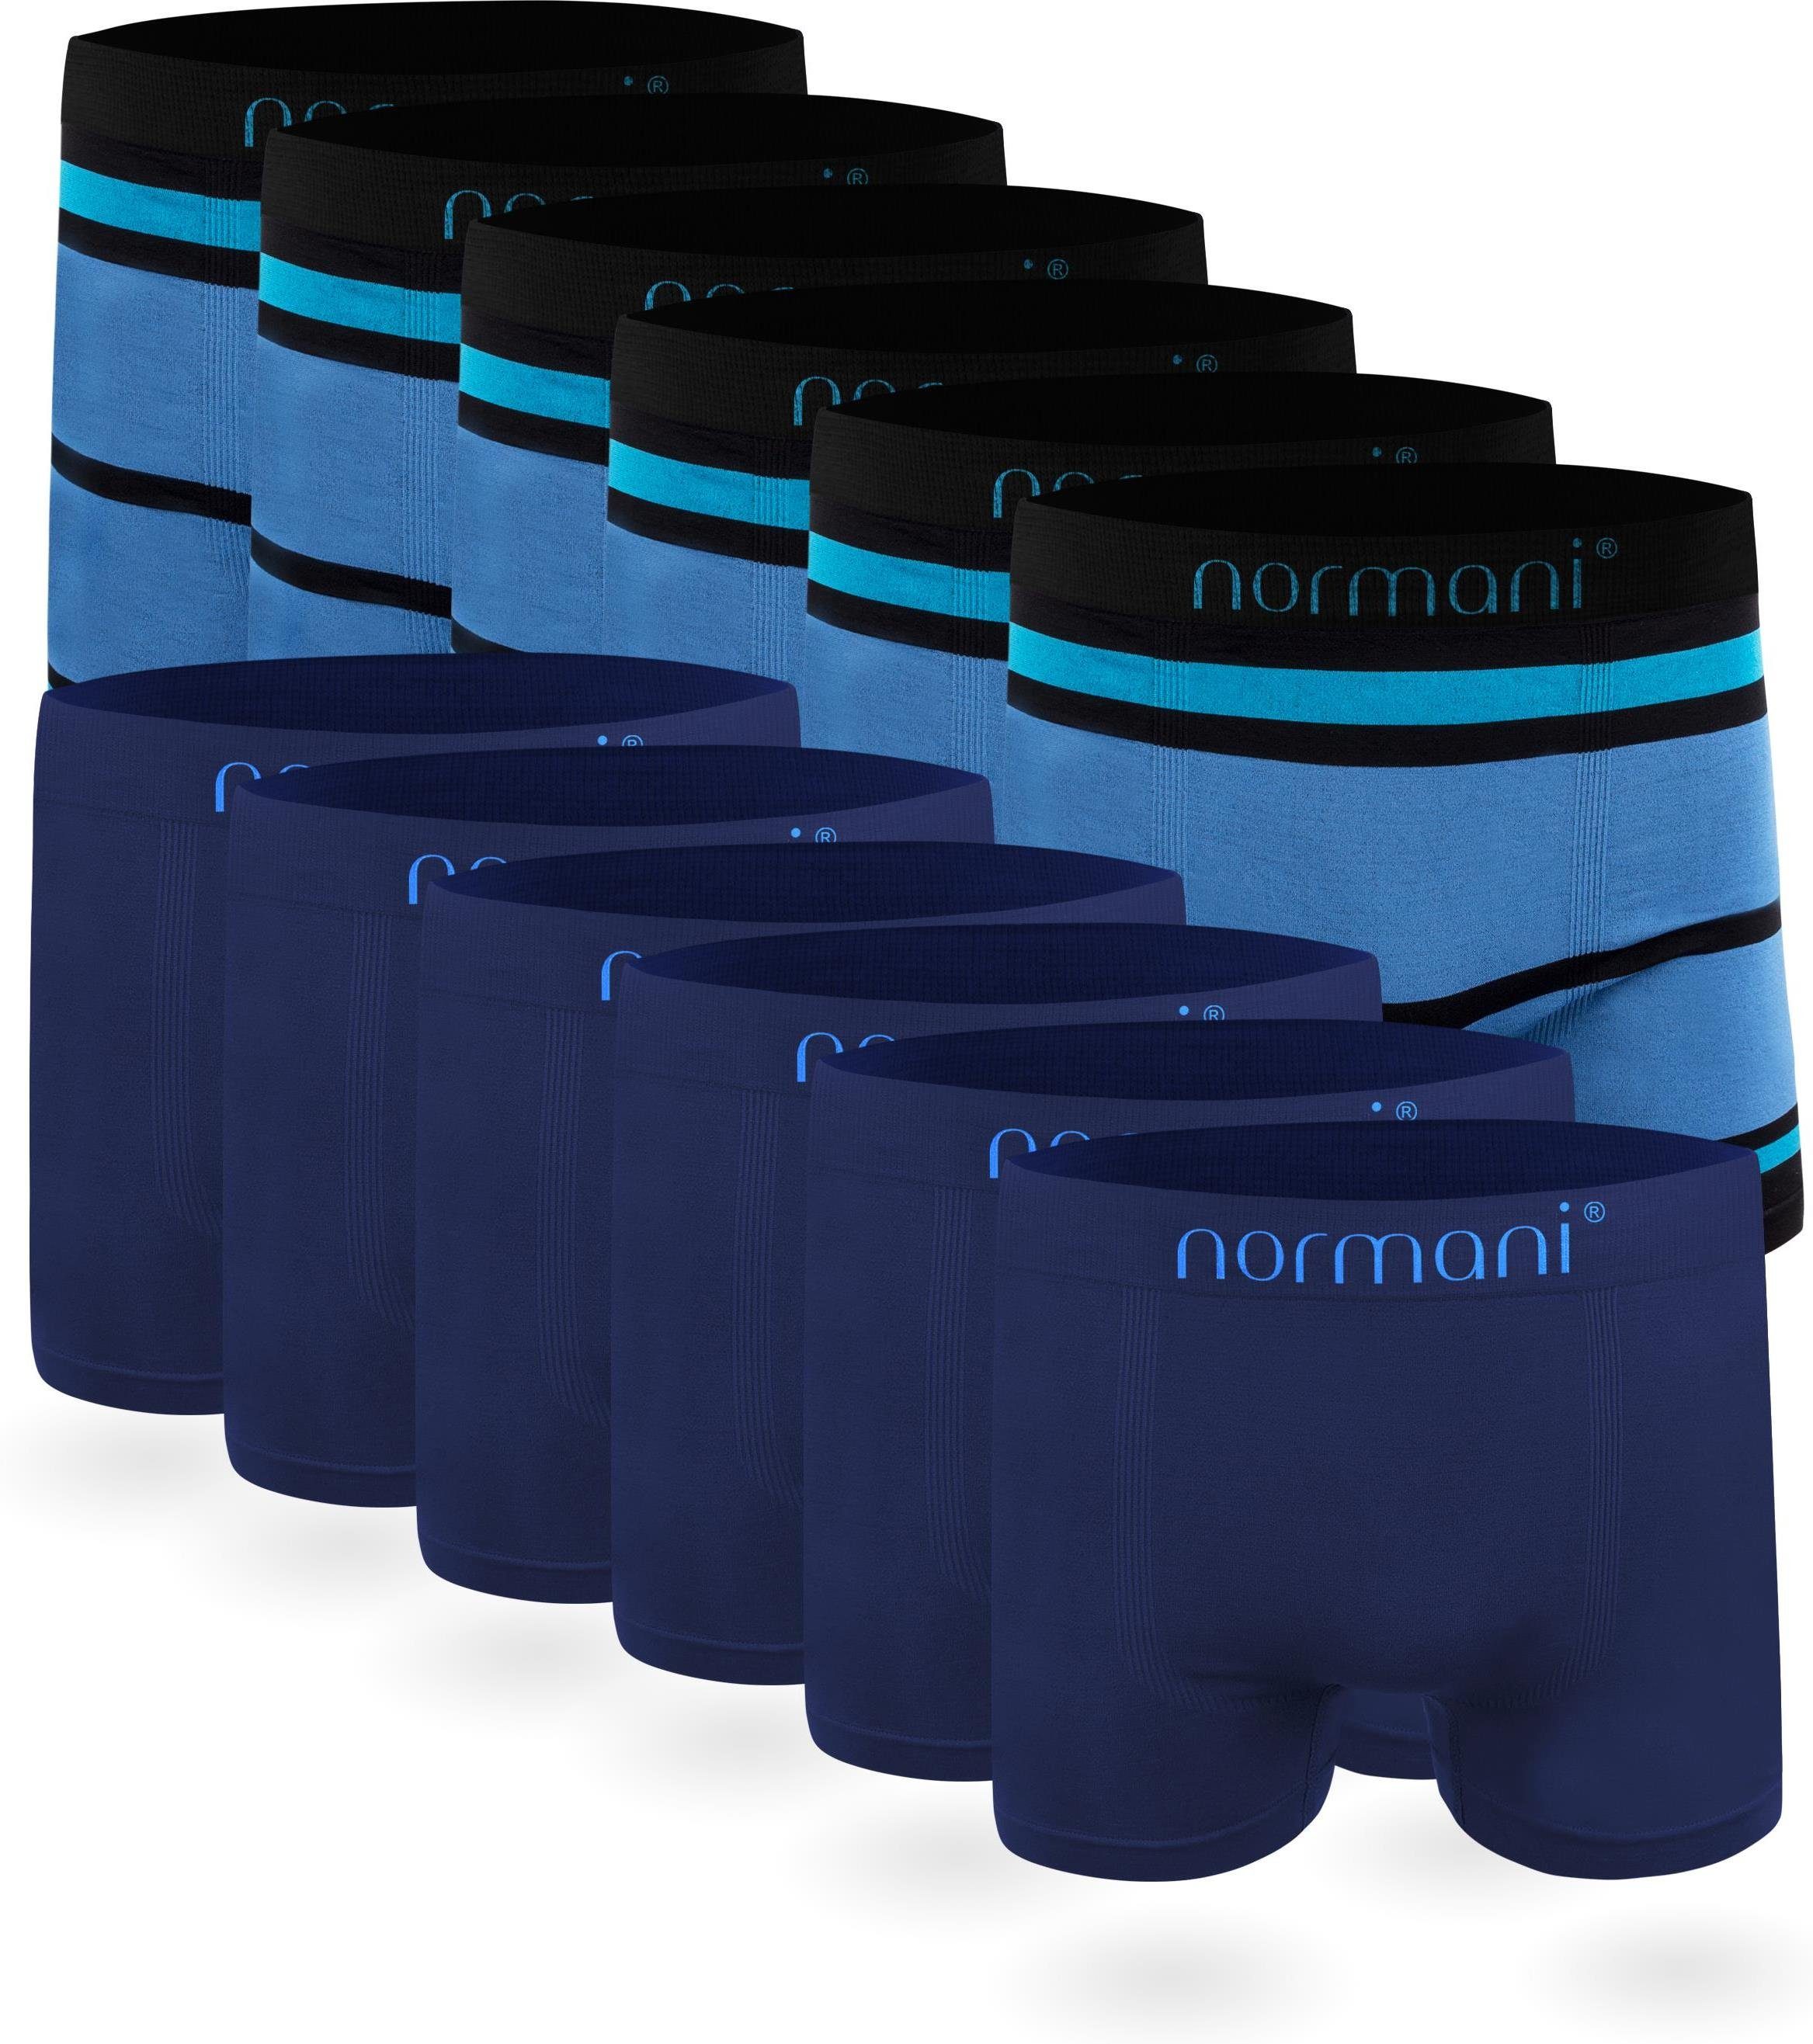 Männer Stück für aus normani Blau/Hellblau Mikrofaser-Boxershorts Unterhosen Material schnell trocknendem Herren Retropants 12 Blau / Retro Boxer